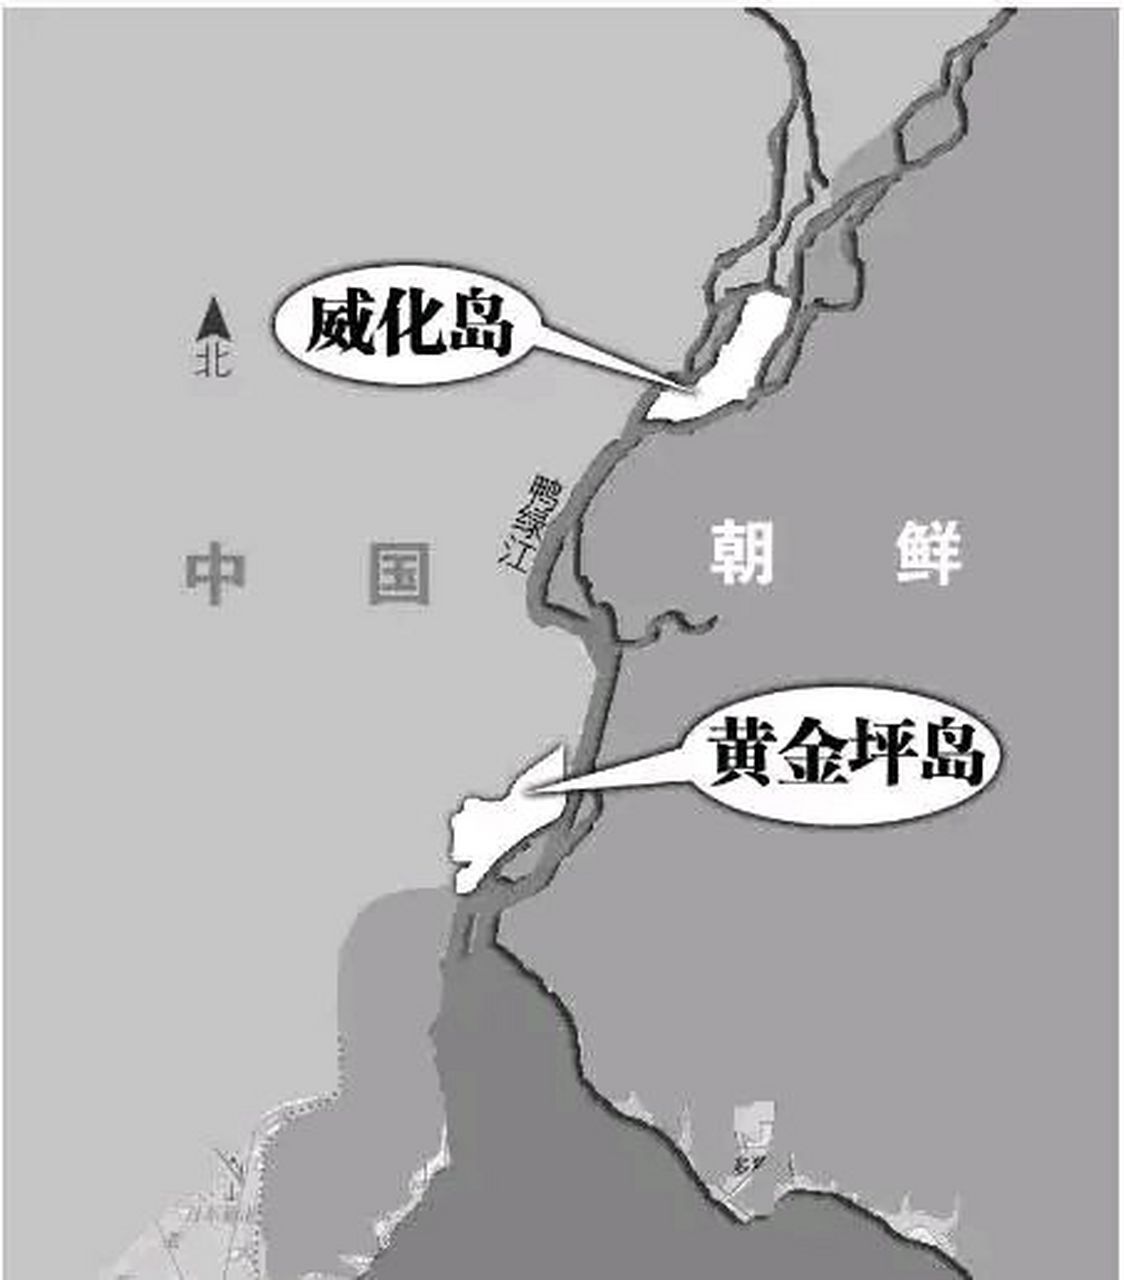 朝鲜水丰水库地图图片